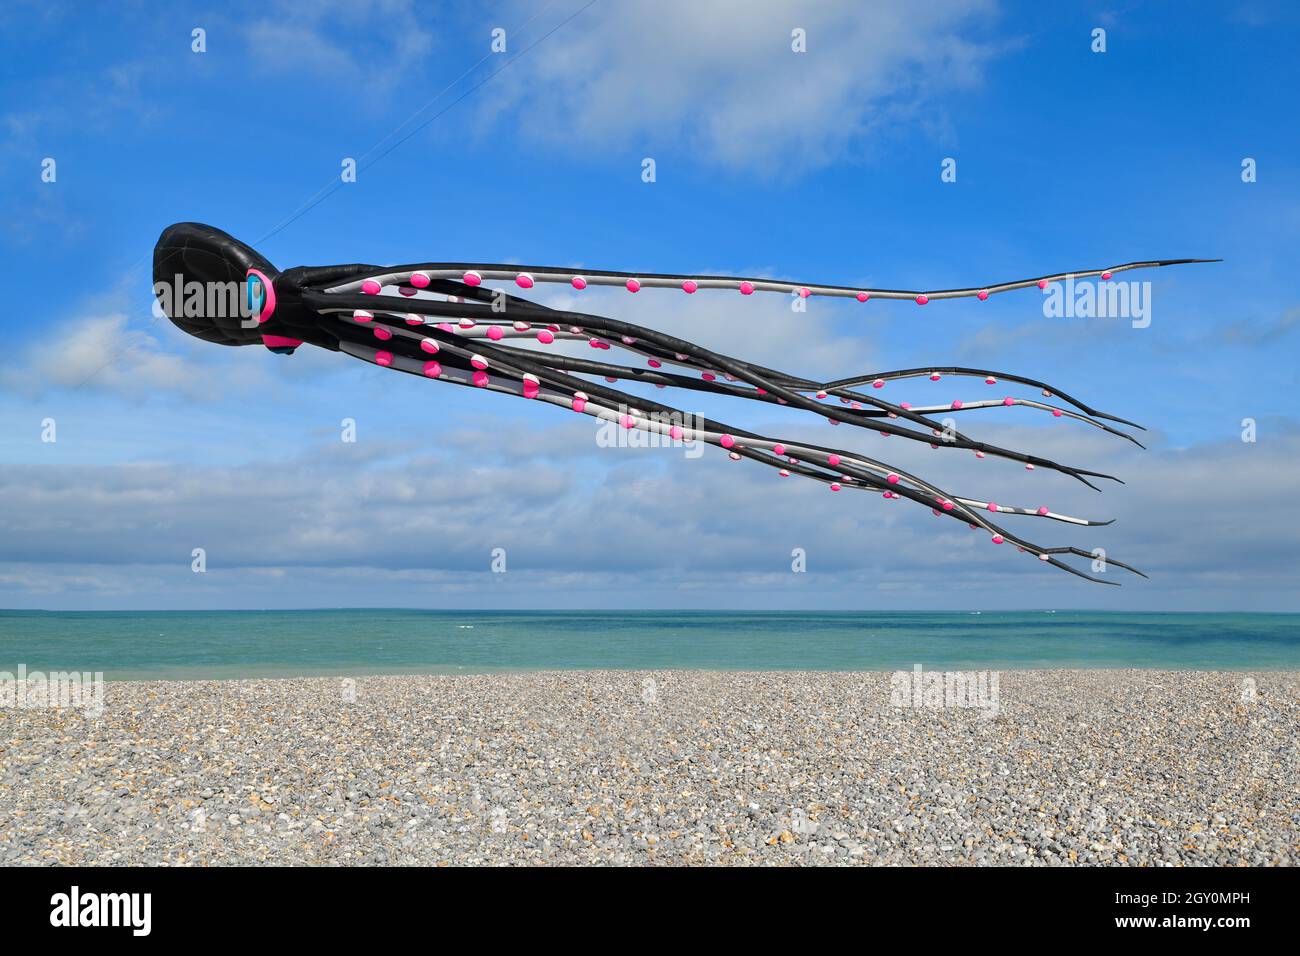 DIEPPE, FRANCE - SEPTEMBER 11, 2018: Kite festival. Octopus kites in the sky in Atlantic ocean Stock Photo